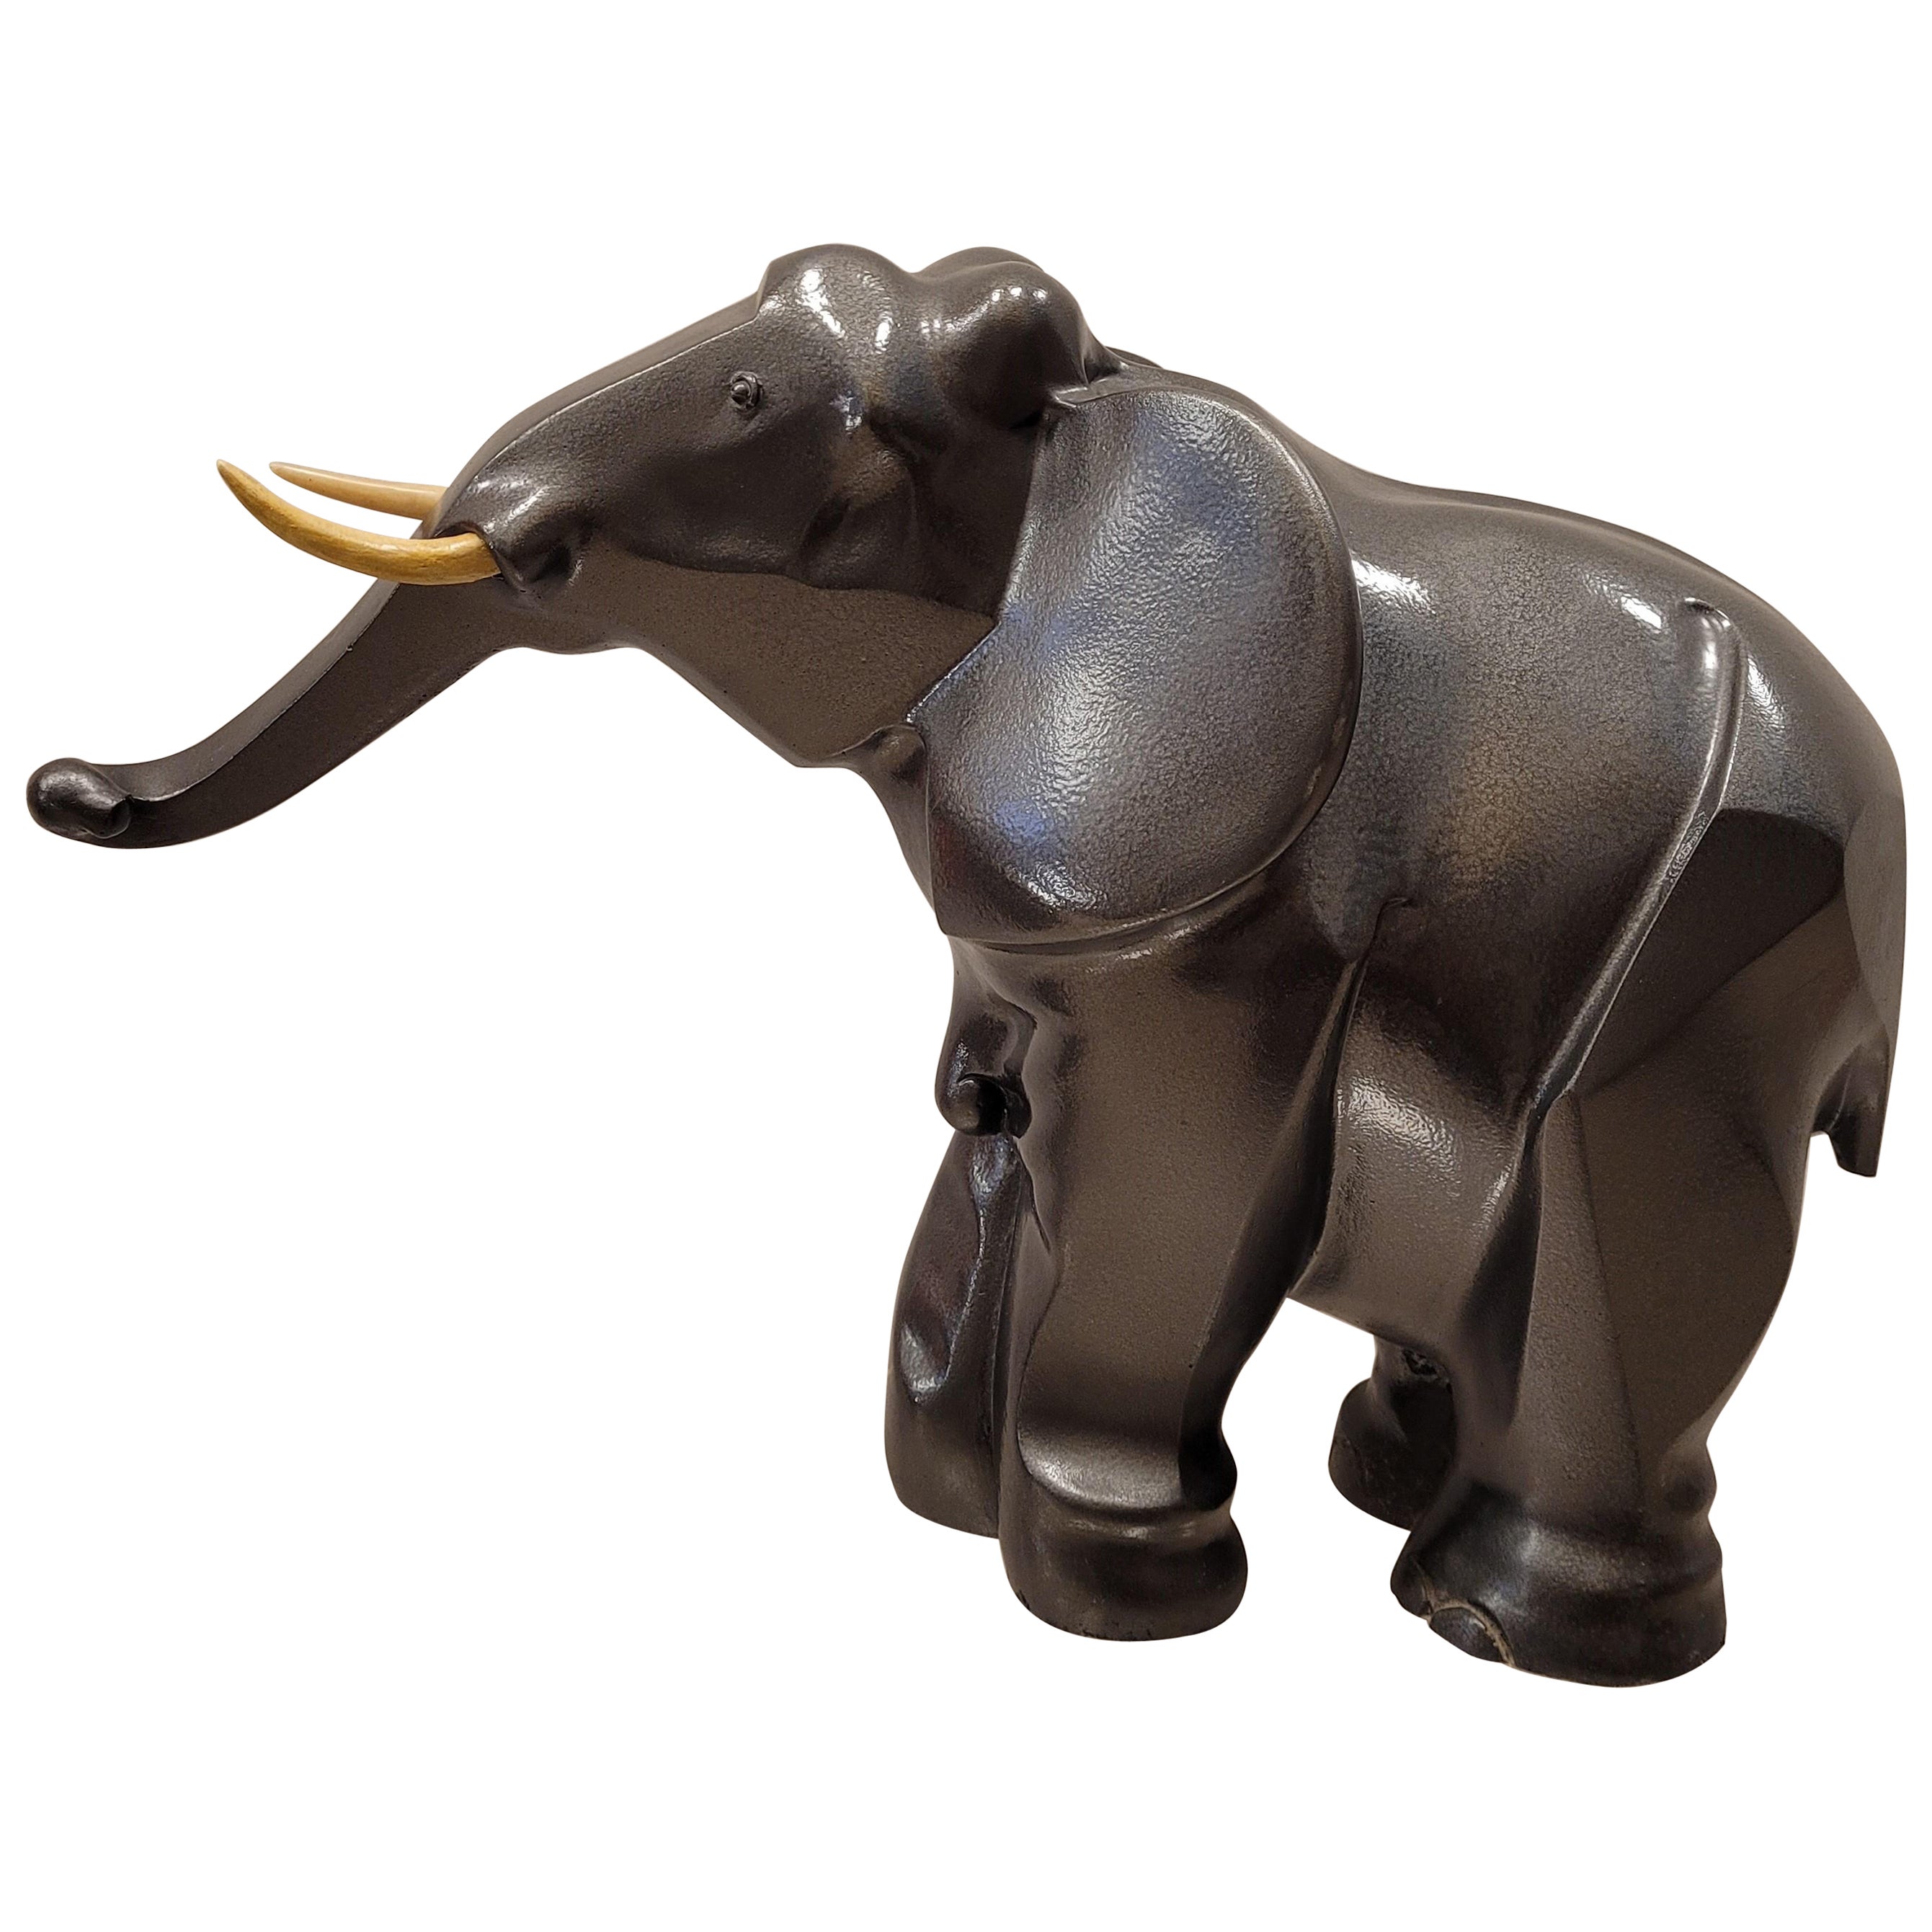 Art Deco French Elephant Sculpture, Babbitt Material